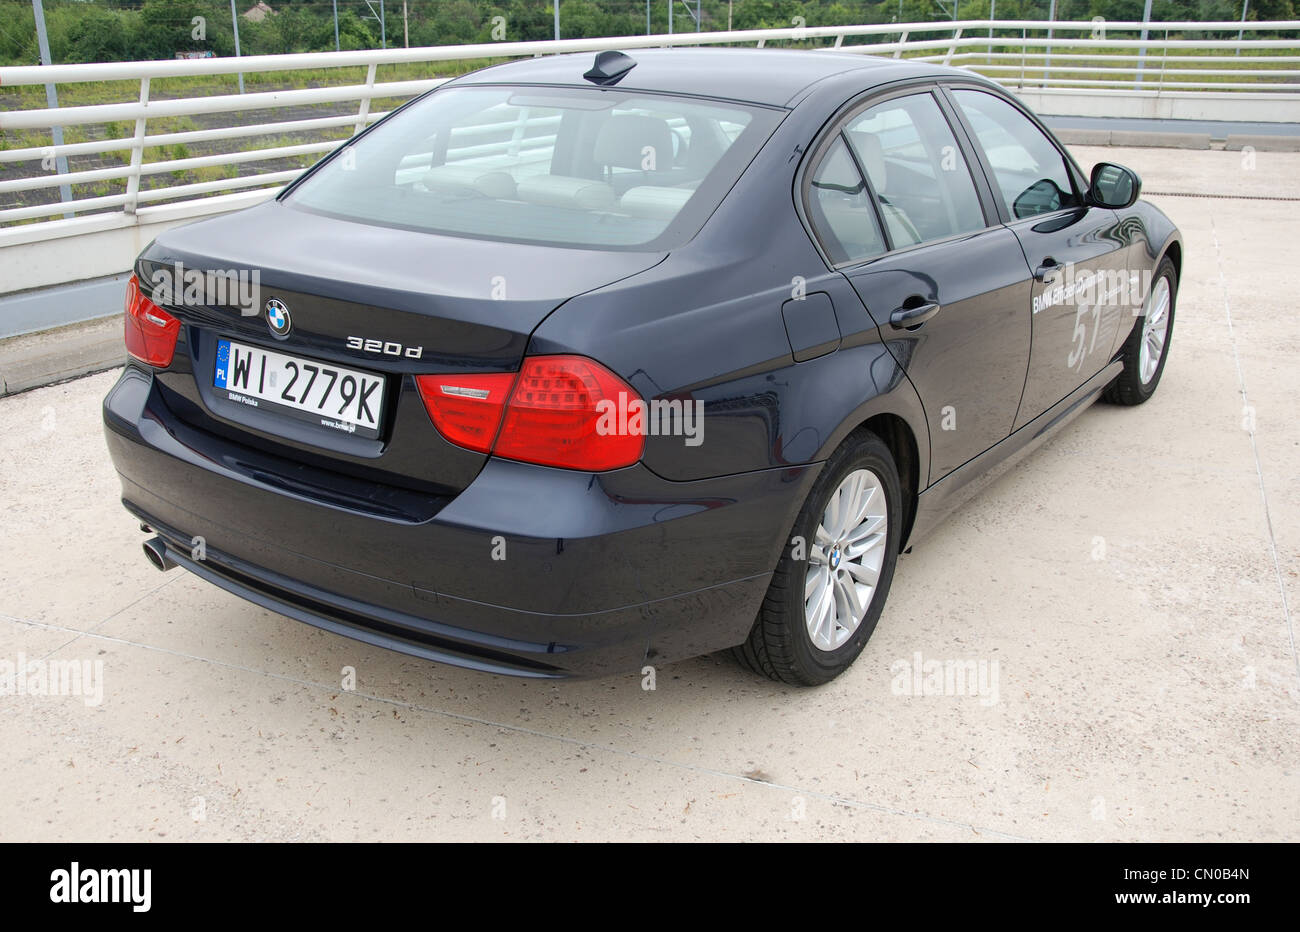 BMW 320d - dinámica eficiente mi 2005 (FL 2009) - Premium alemán coche de  clase media alta (segmento D) - en el parking Fotografía de stock - Alamy